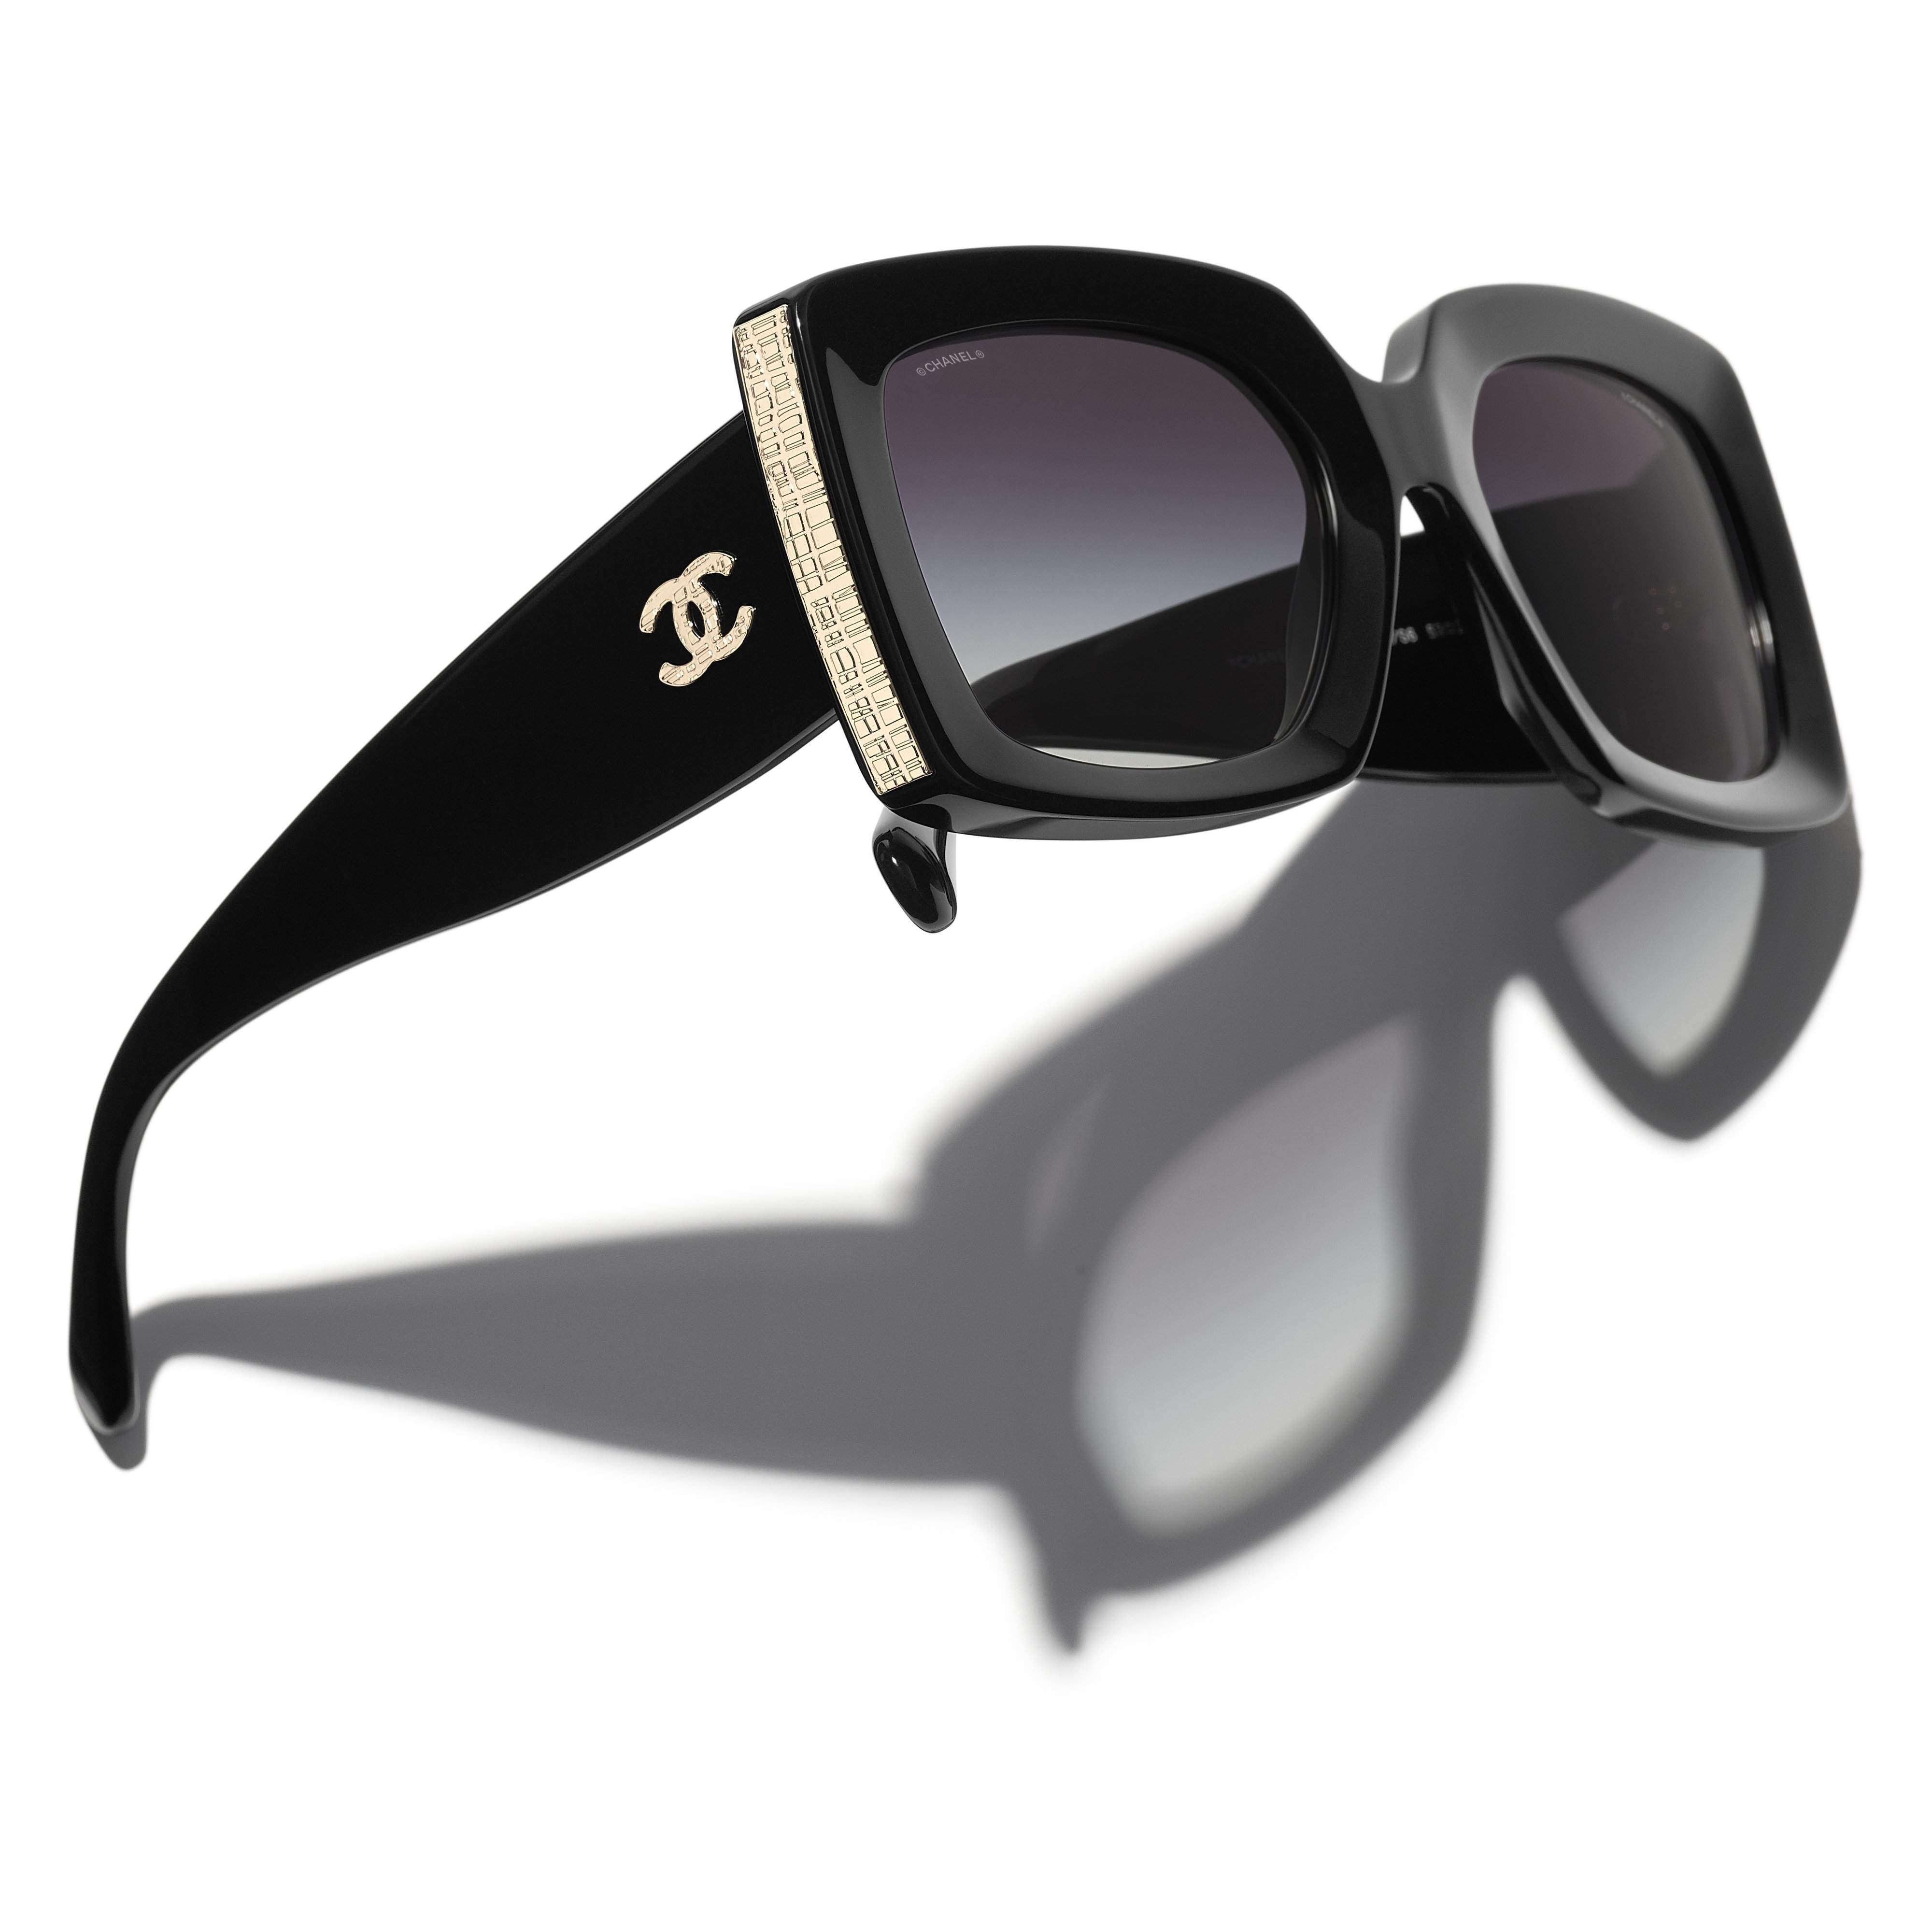 Chanel Sonnenbrillen aus Kunststoff - Schwarz - 36144673